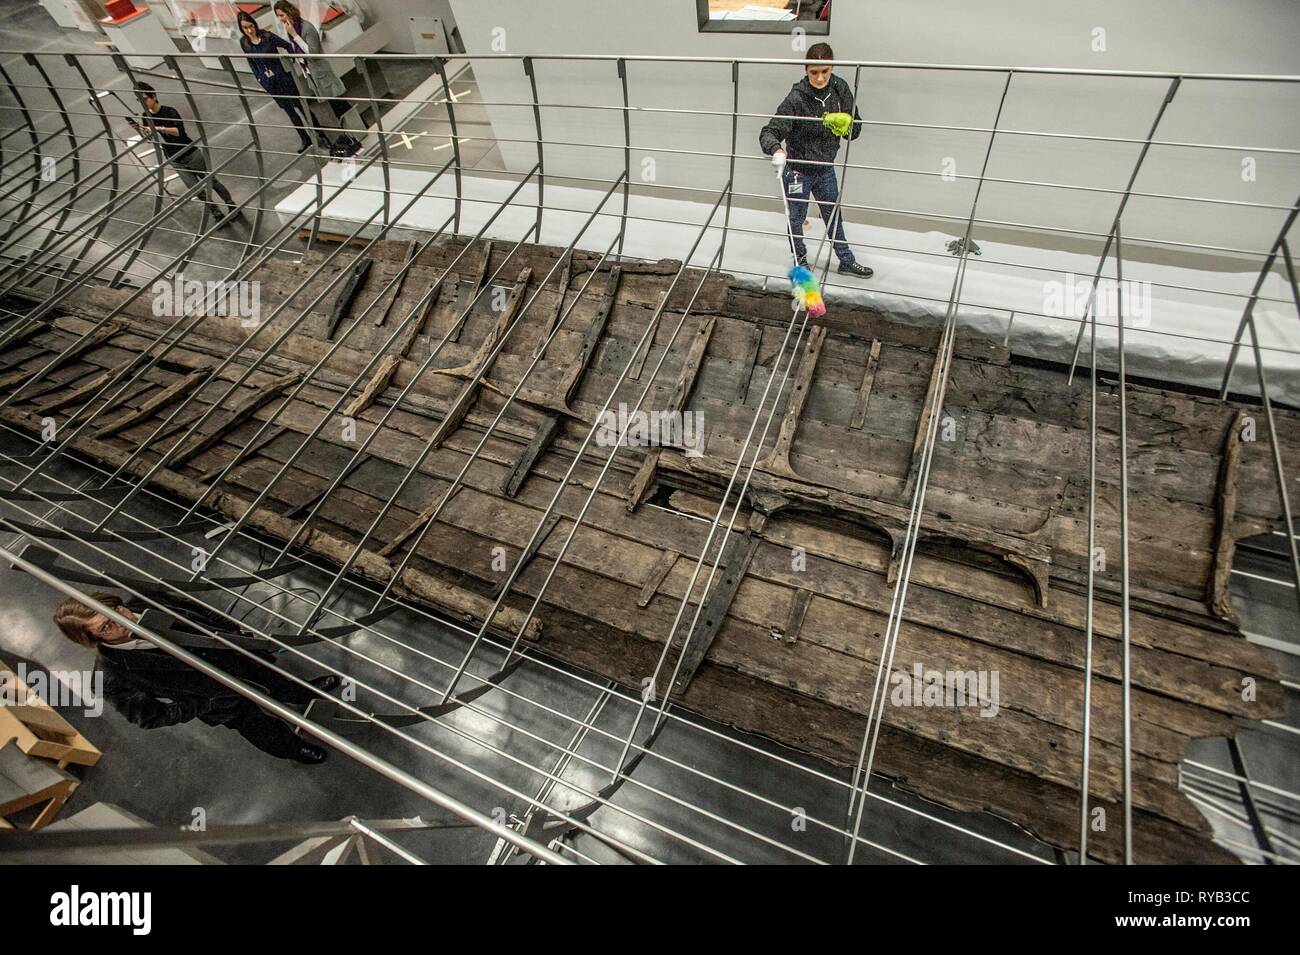 Blick auf überlebende Hölzer aus längste Viking Kriegsschiff, die jemals in Großbritannien zum ersten Mal gefunden angezeigt. Die Hölzer haben in mühevoller Kleinarbeit zusammen wie ein riesiges Puzzle ausgestattet und in eine tatsächliche Größe stahl Wiege. Der Wiederaufbau wird durch Mitglieder der Nationalen Museum für Dänemark, das Museum vor allem gekommen sind. Das 37 Meter lange Schiff wird bilden den Mittelpunkt des BP die Ausstellung des British Museum, Wikinger: Leben und Legende. Das Schiff, als Roskilde 6 bekannt, wurde von den Banken der Roskilde Fjord in Dänemark im Laufe der Arbeit der Roski zu entwickeln ausgegraben Stockfoto